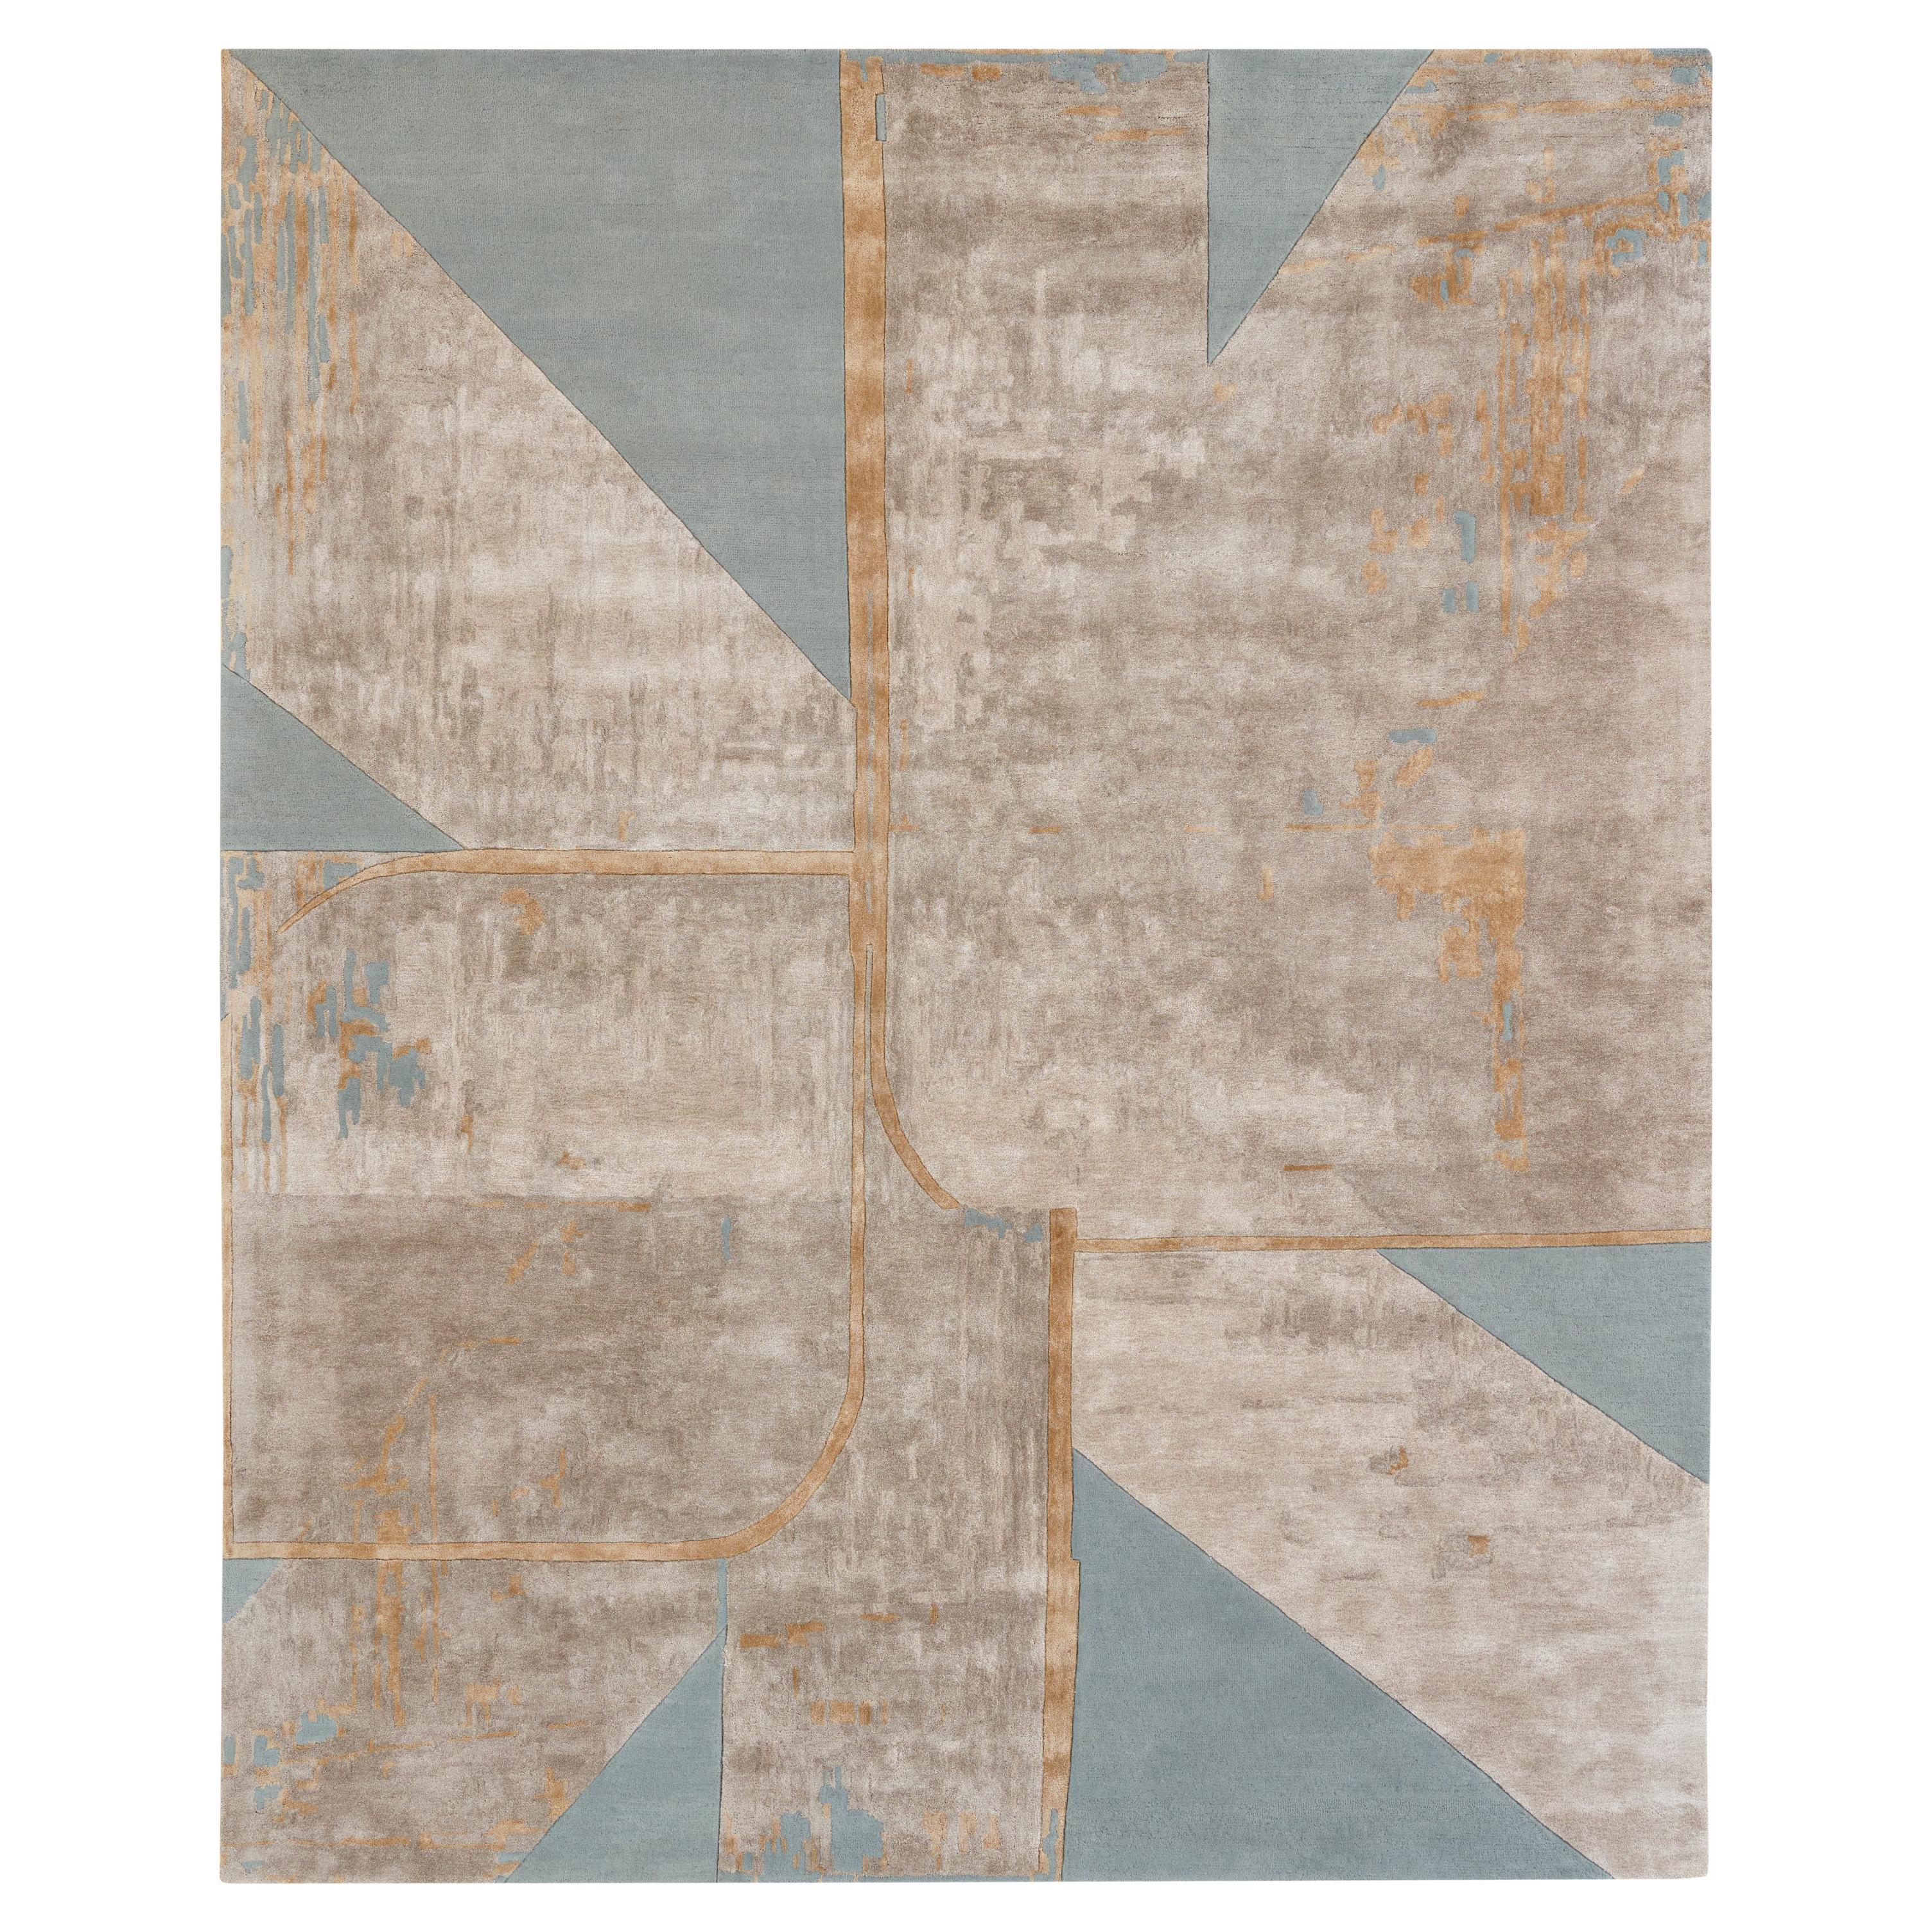 Grand tapis contemporain touffeté à la main, gris argenté et beige, couleurs or, par Hands